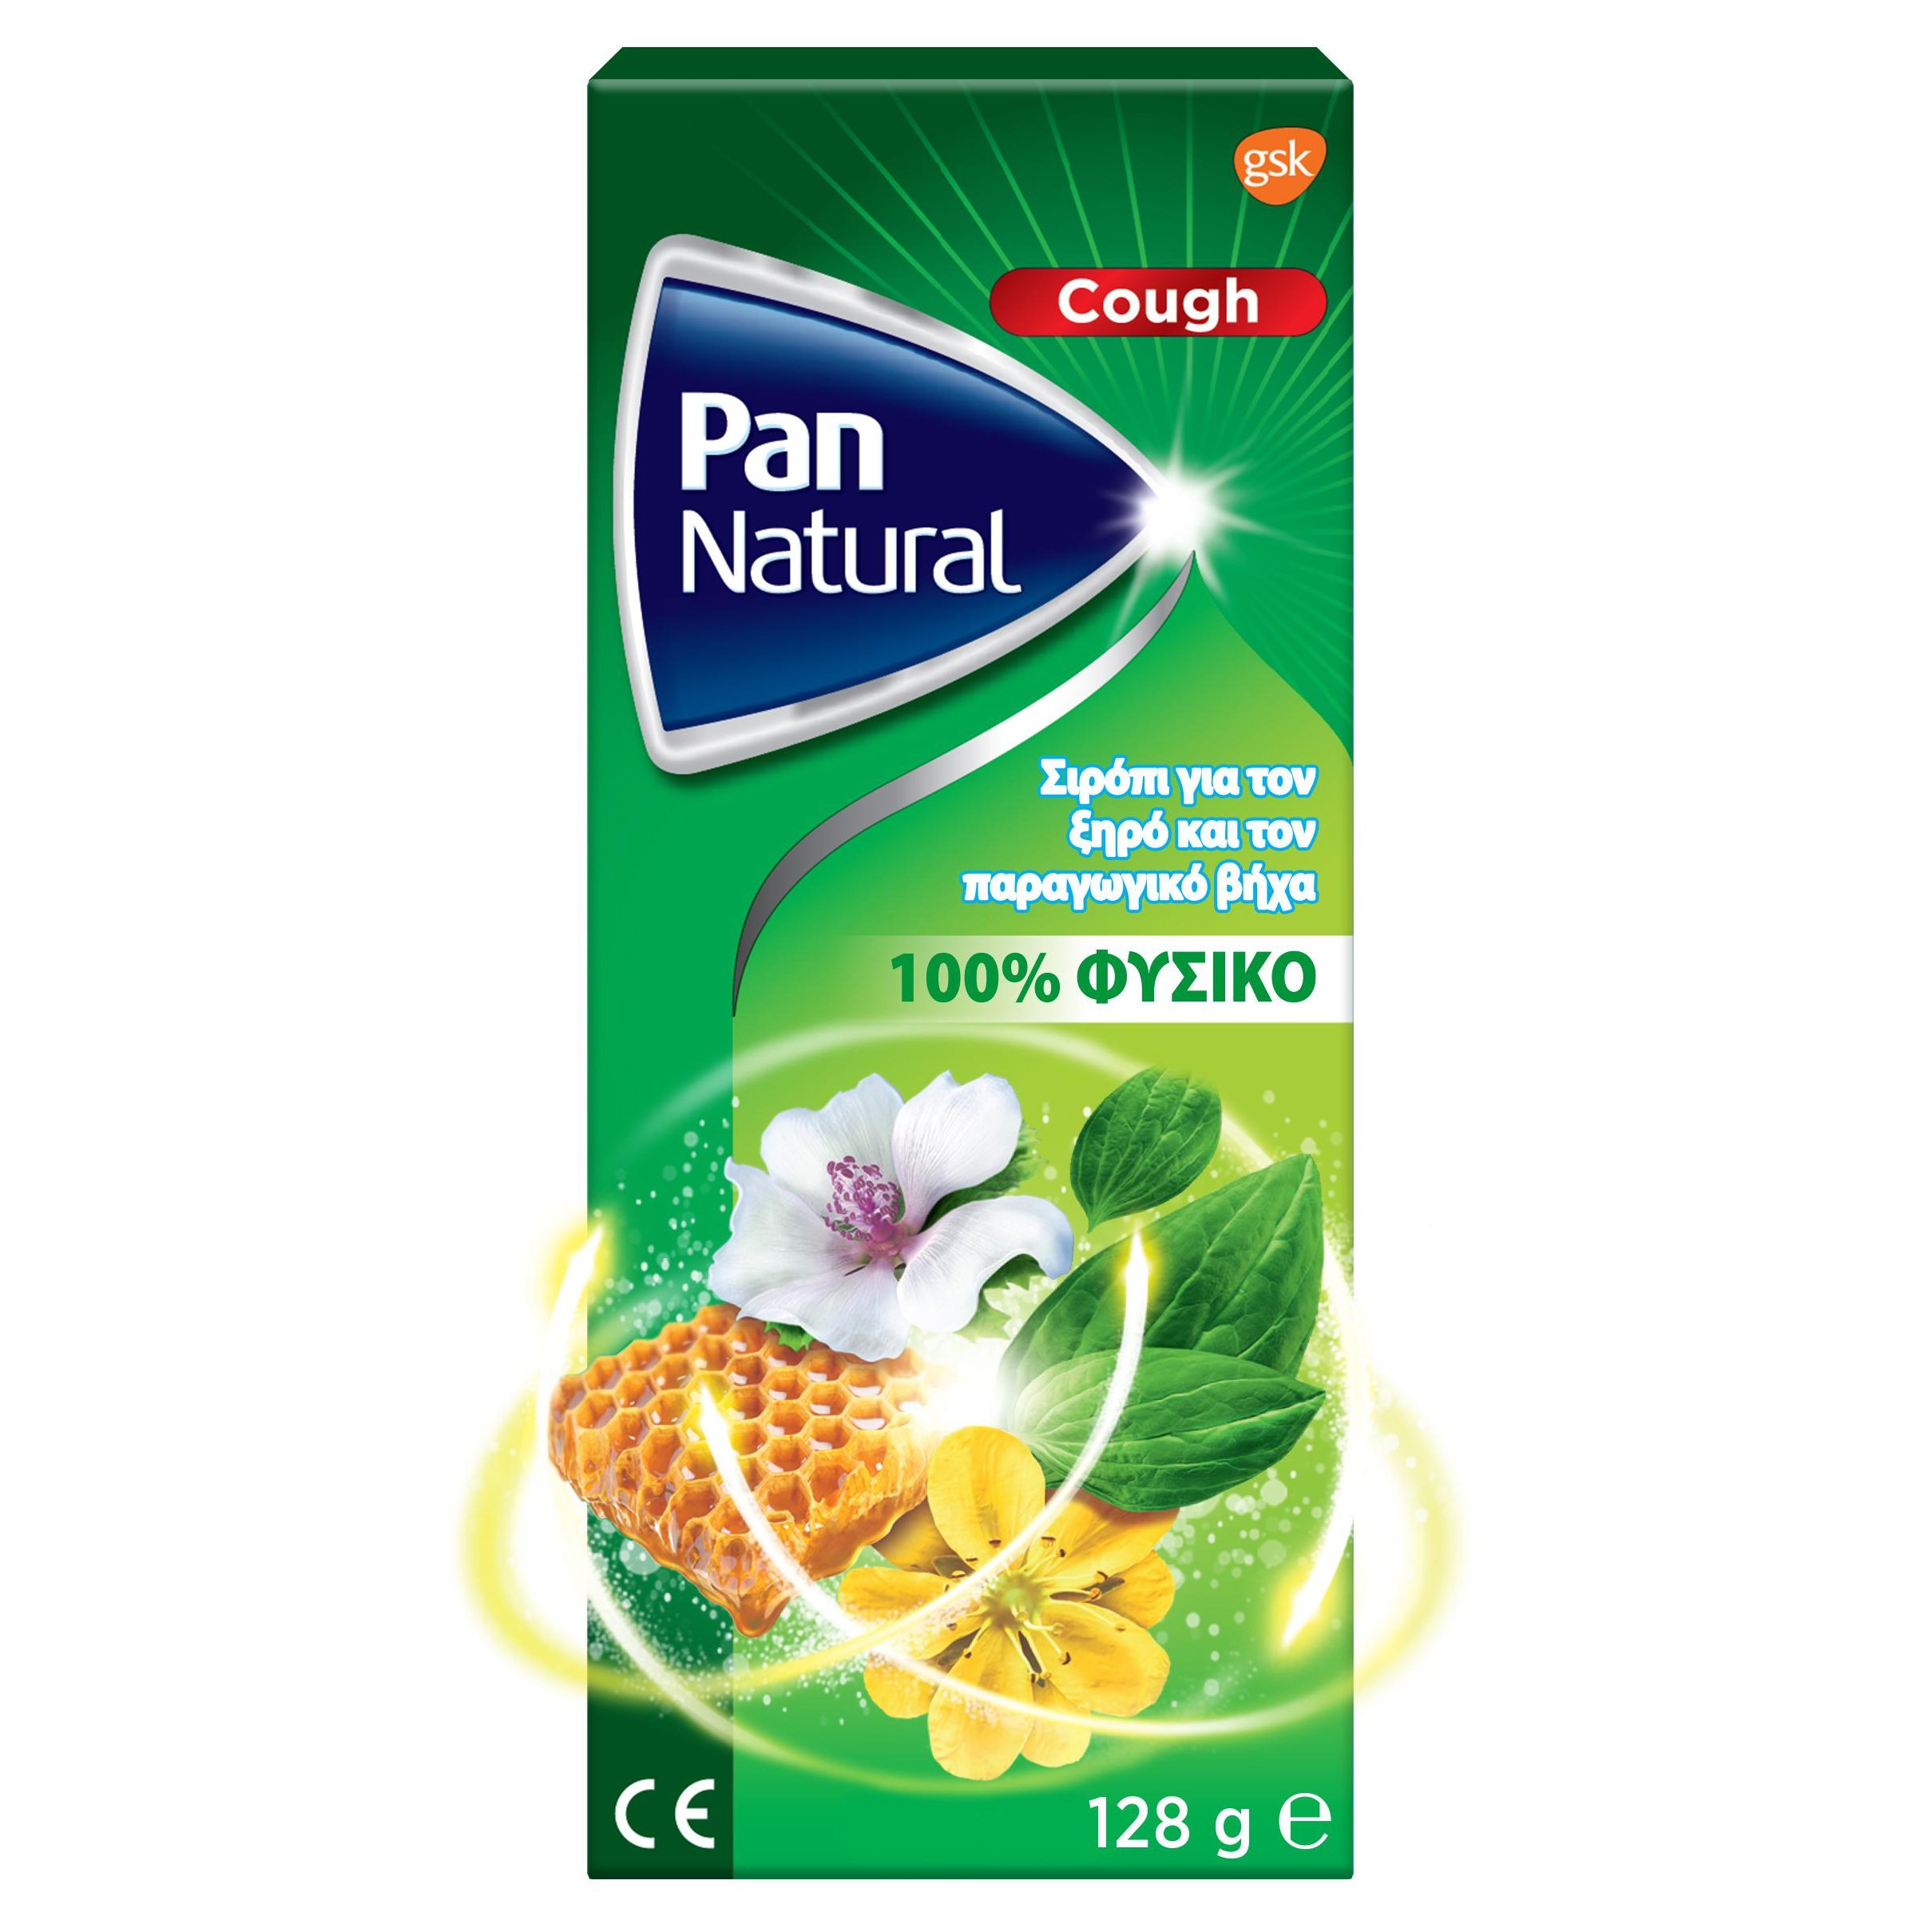 Glaxosmithkline Pan Natural Cough Syrup 100% Φυσικό Σιρόπι για το Ξηρό & Παραγωγικό Βήχα 128gr